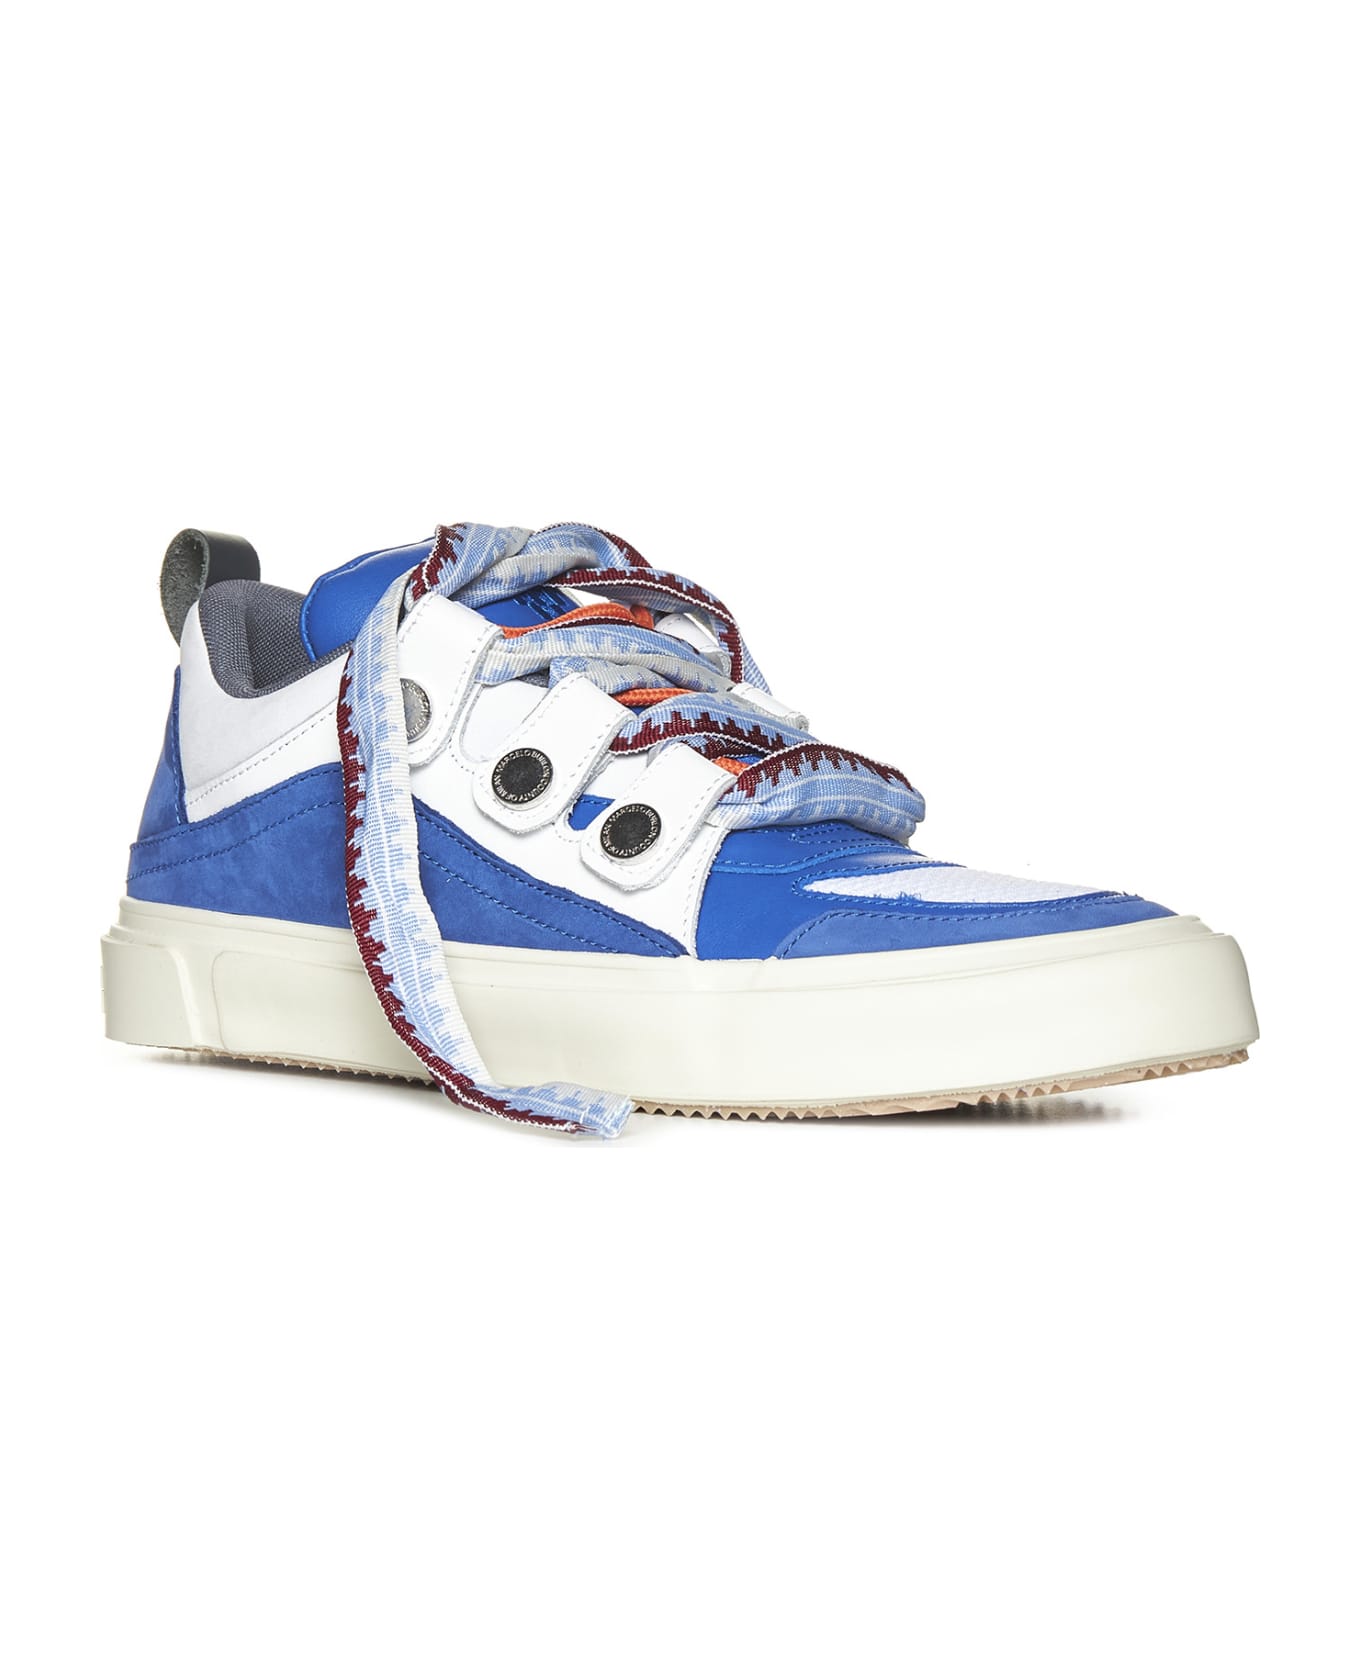 Marcelo Burlon Ticinella Sneaker - Blue white